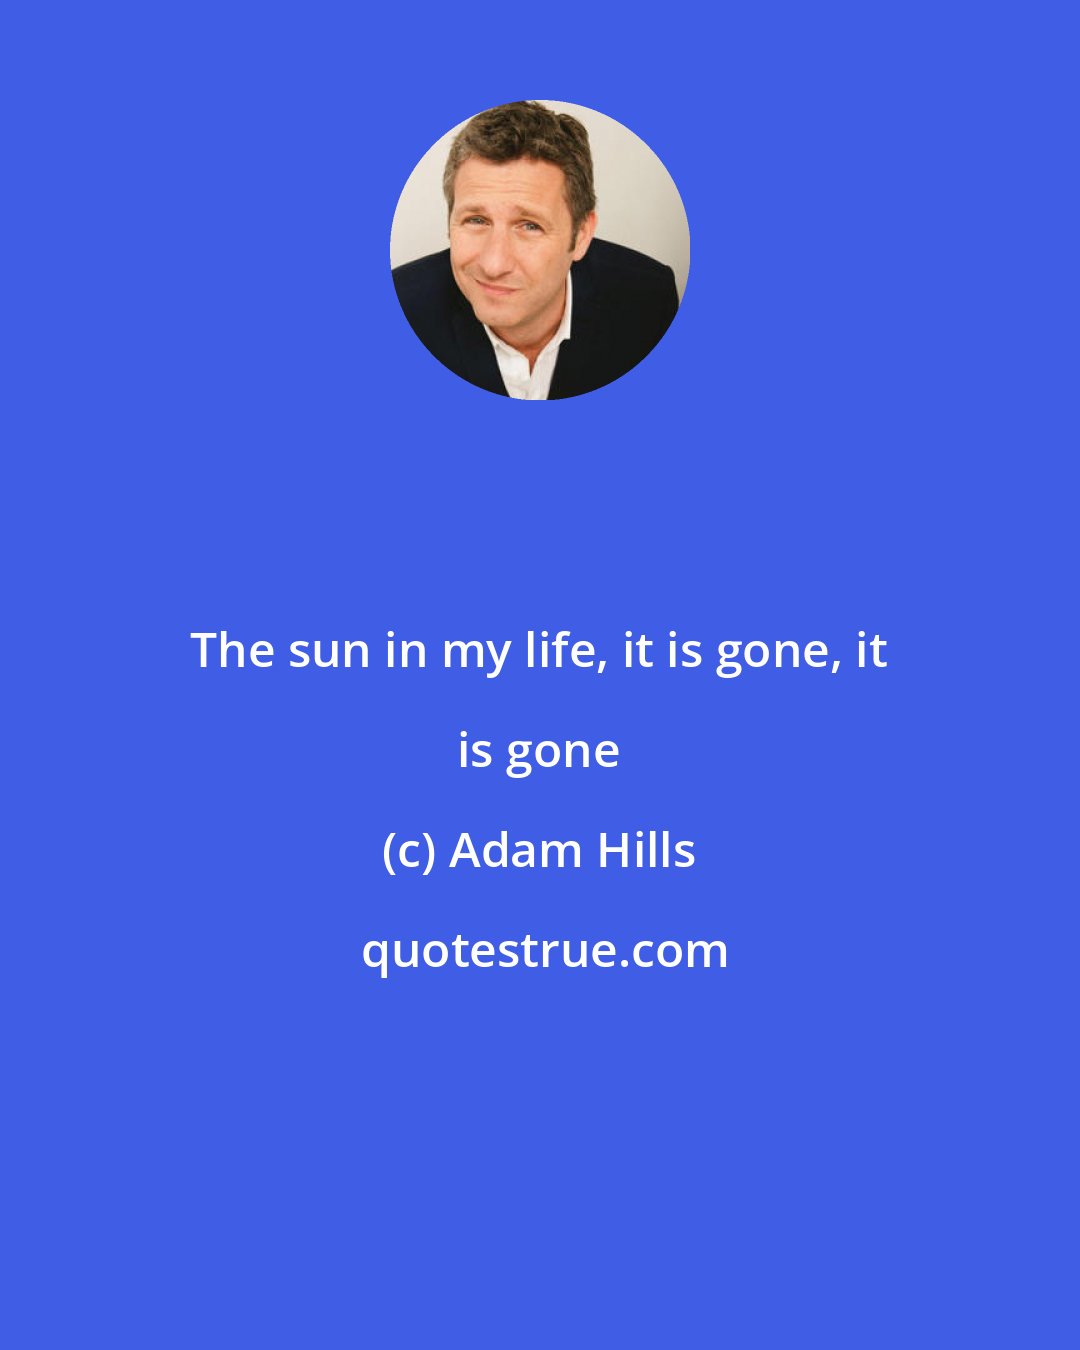 Adam Hills: The sun in my life, it is gone, it is gone